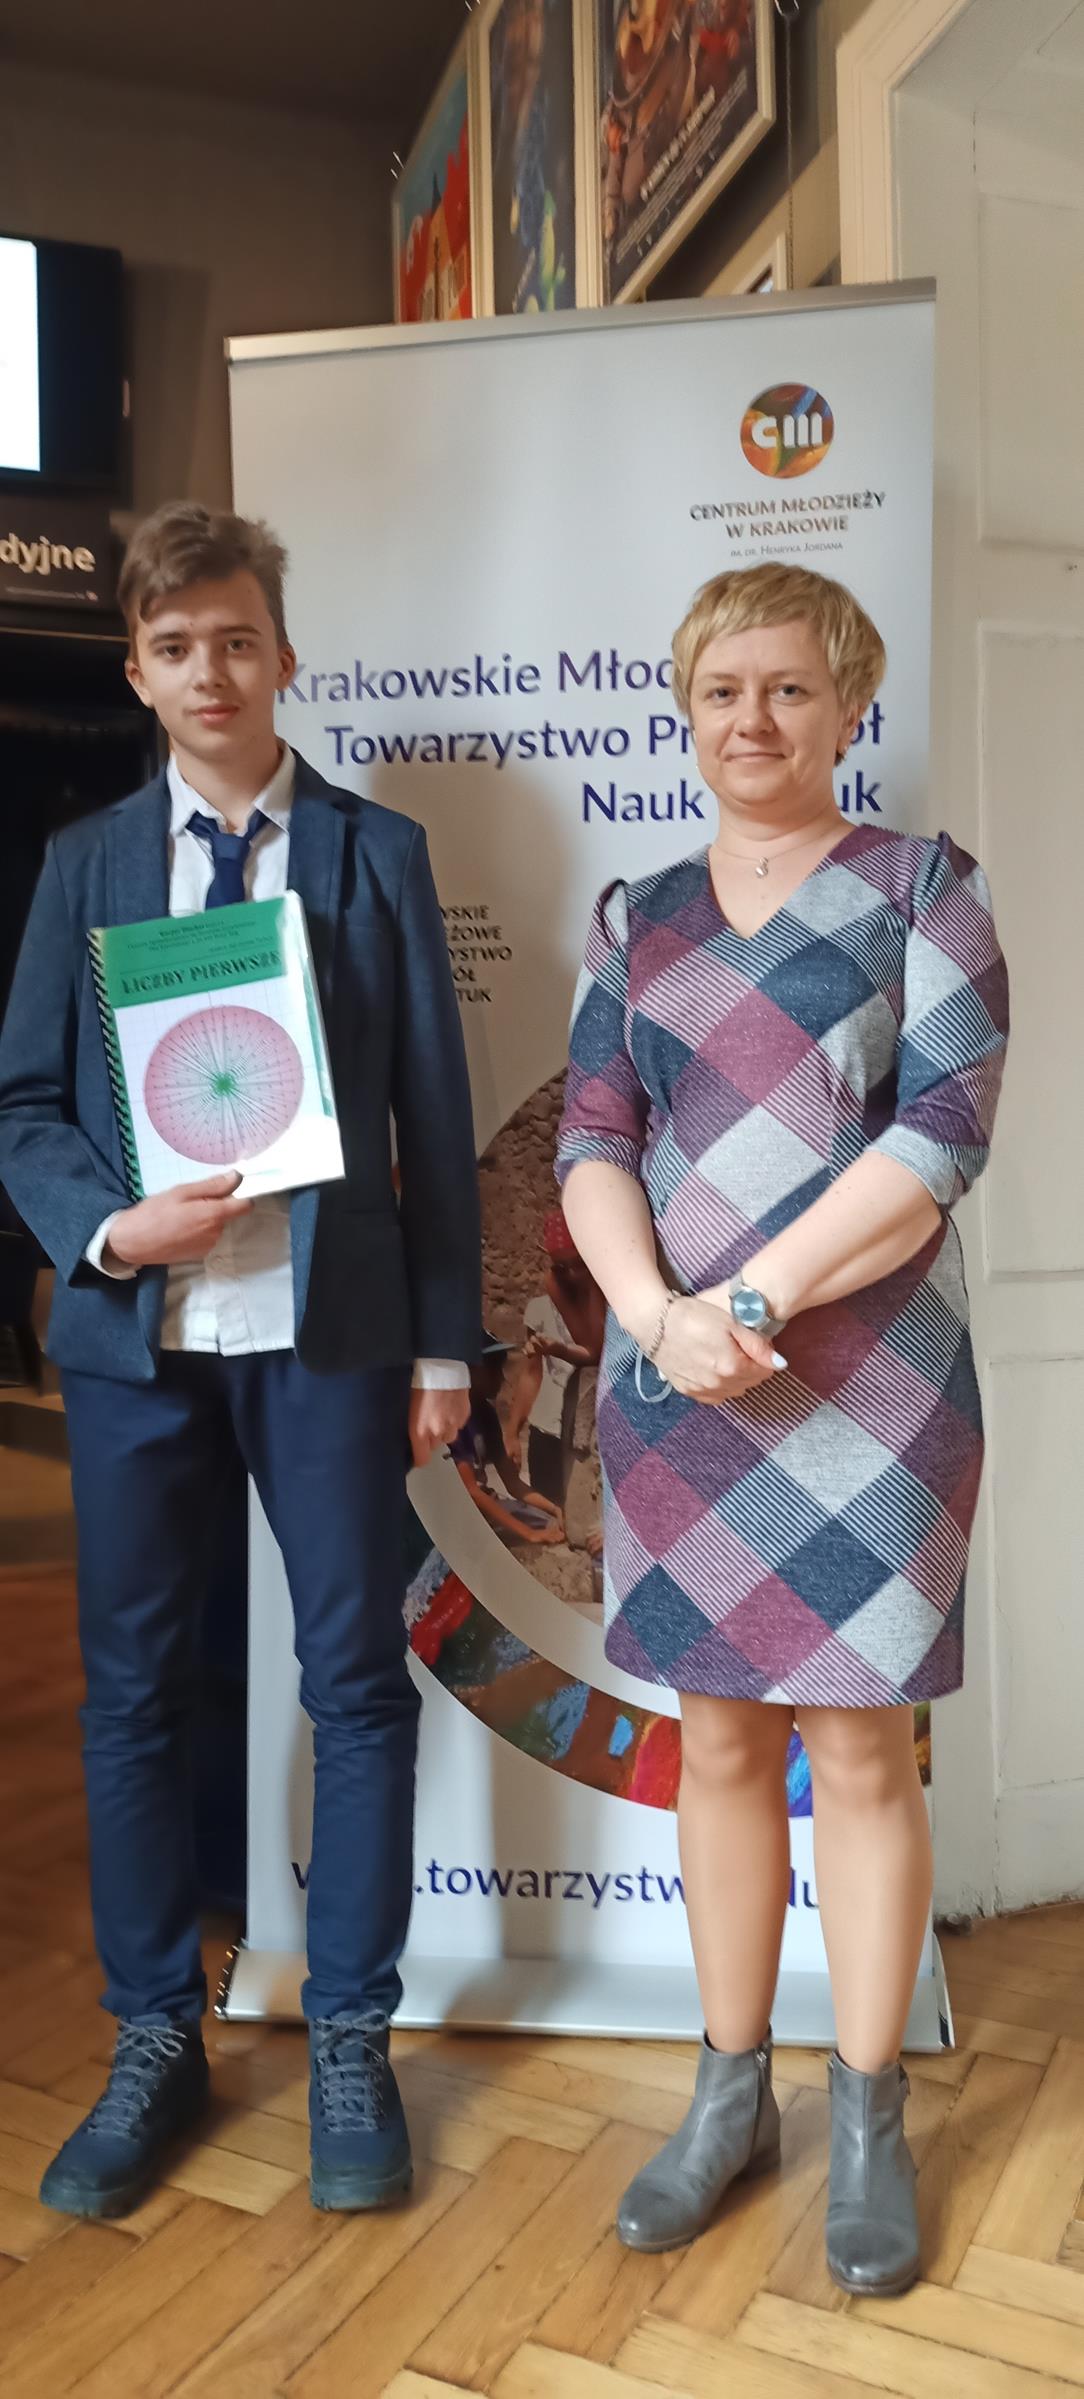 Fotografia przedstawia ucznia klasy 1A, który zdobył nagrodę drugiego stopnia w konkursie Małopolskich Prac Matematycznych wraz z opiekunem